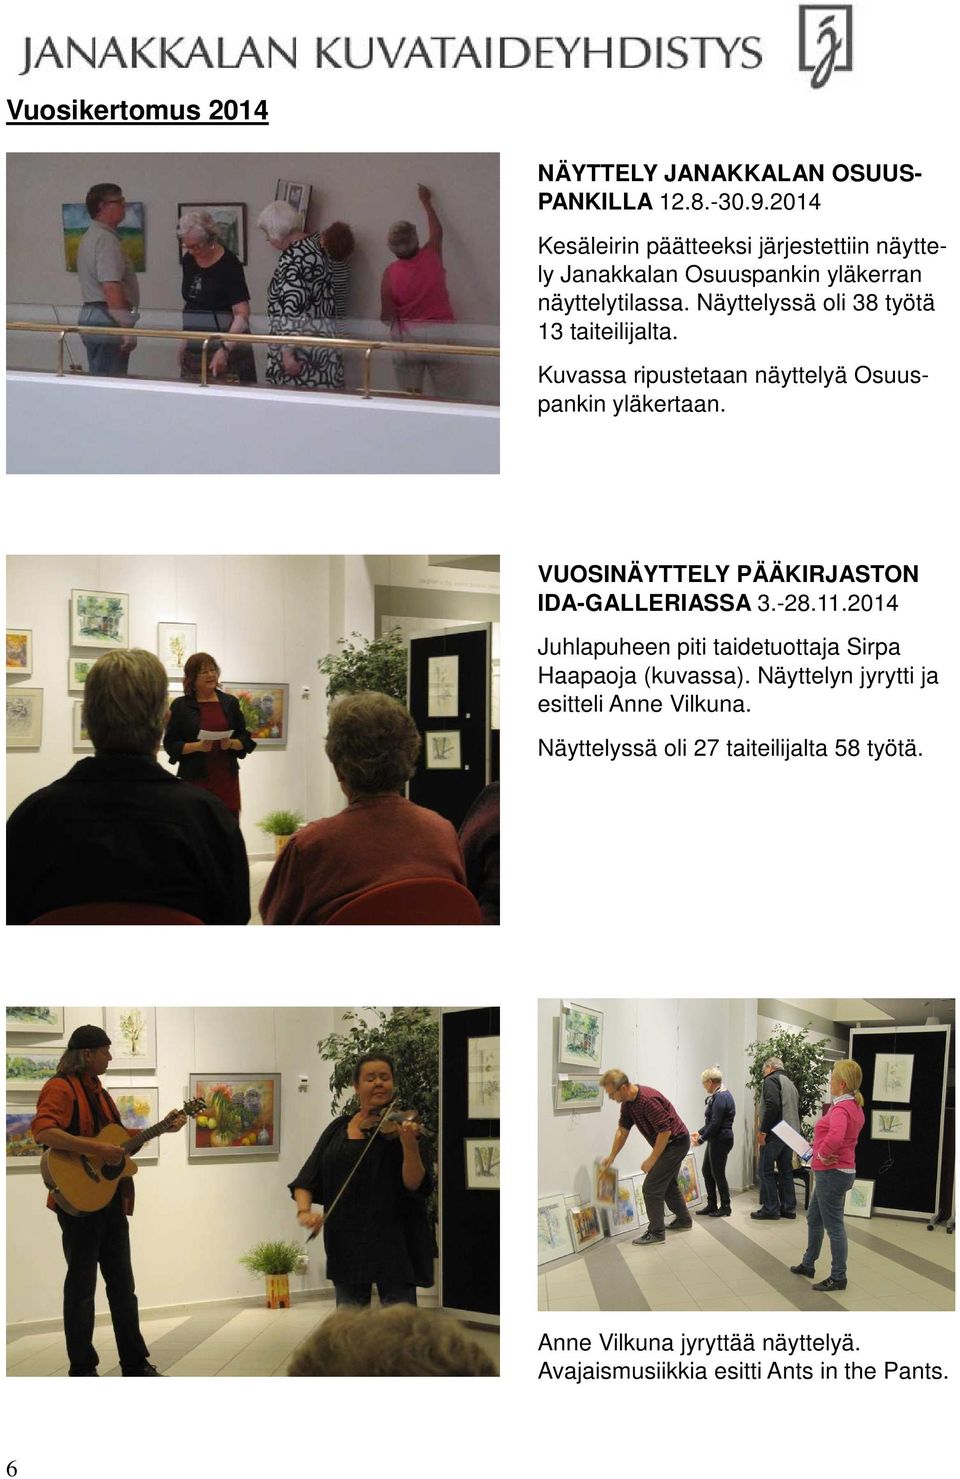 Näyttelyssä oli 38 työtä 13 taiteilijalta. Kuvassa ripustetaan näyttelyä Osuuspankin yläkertaan.